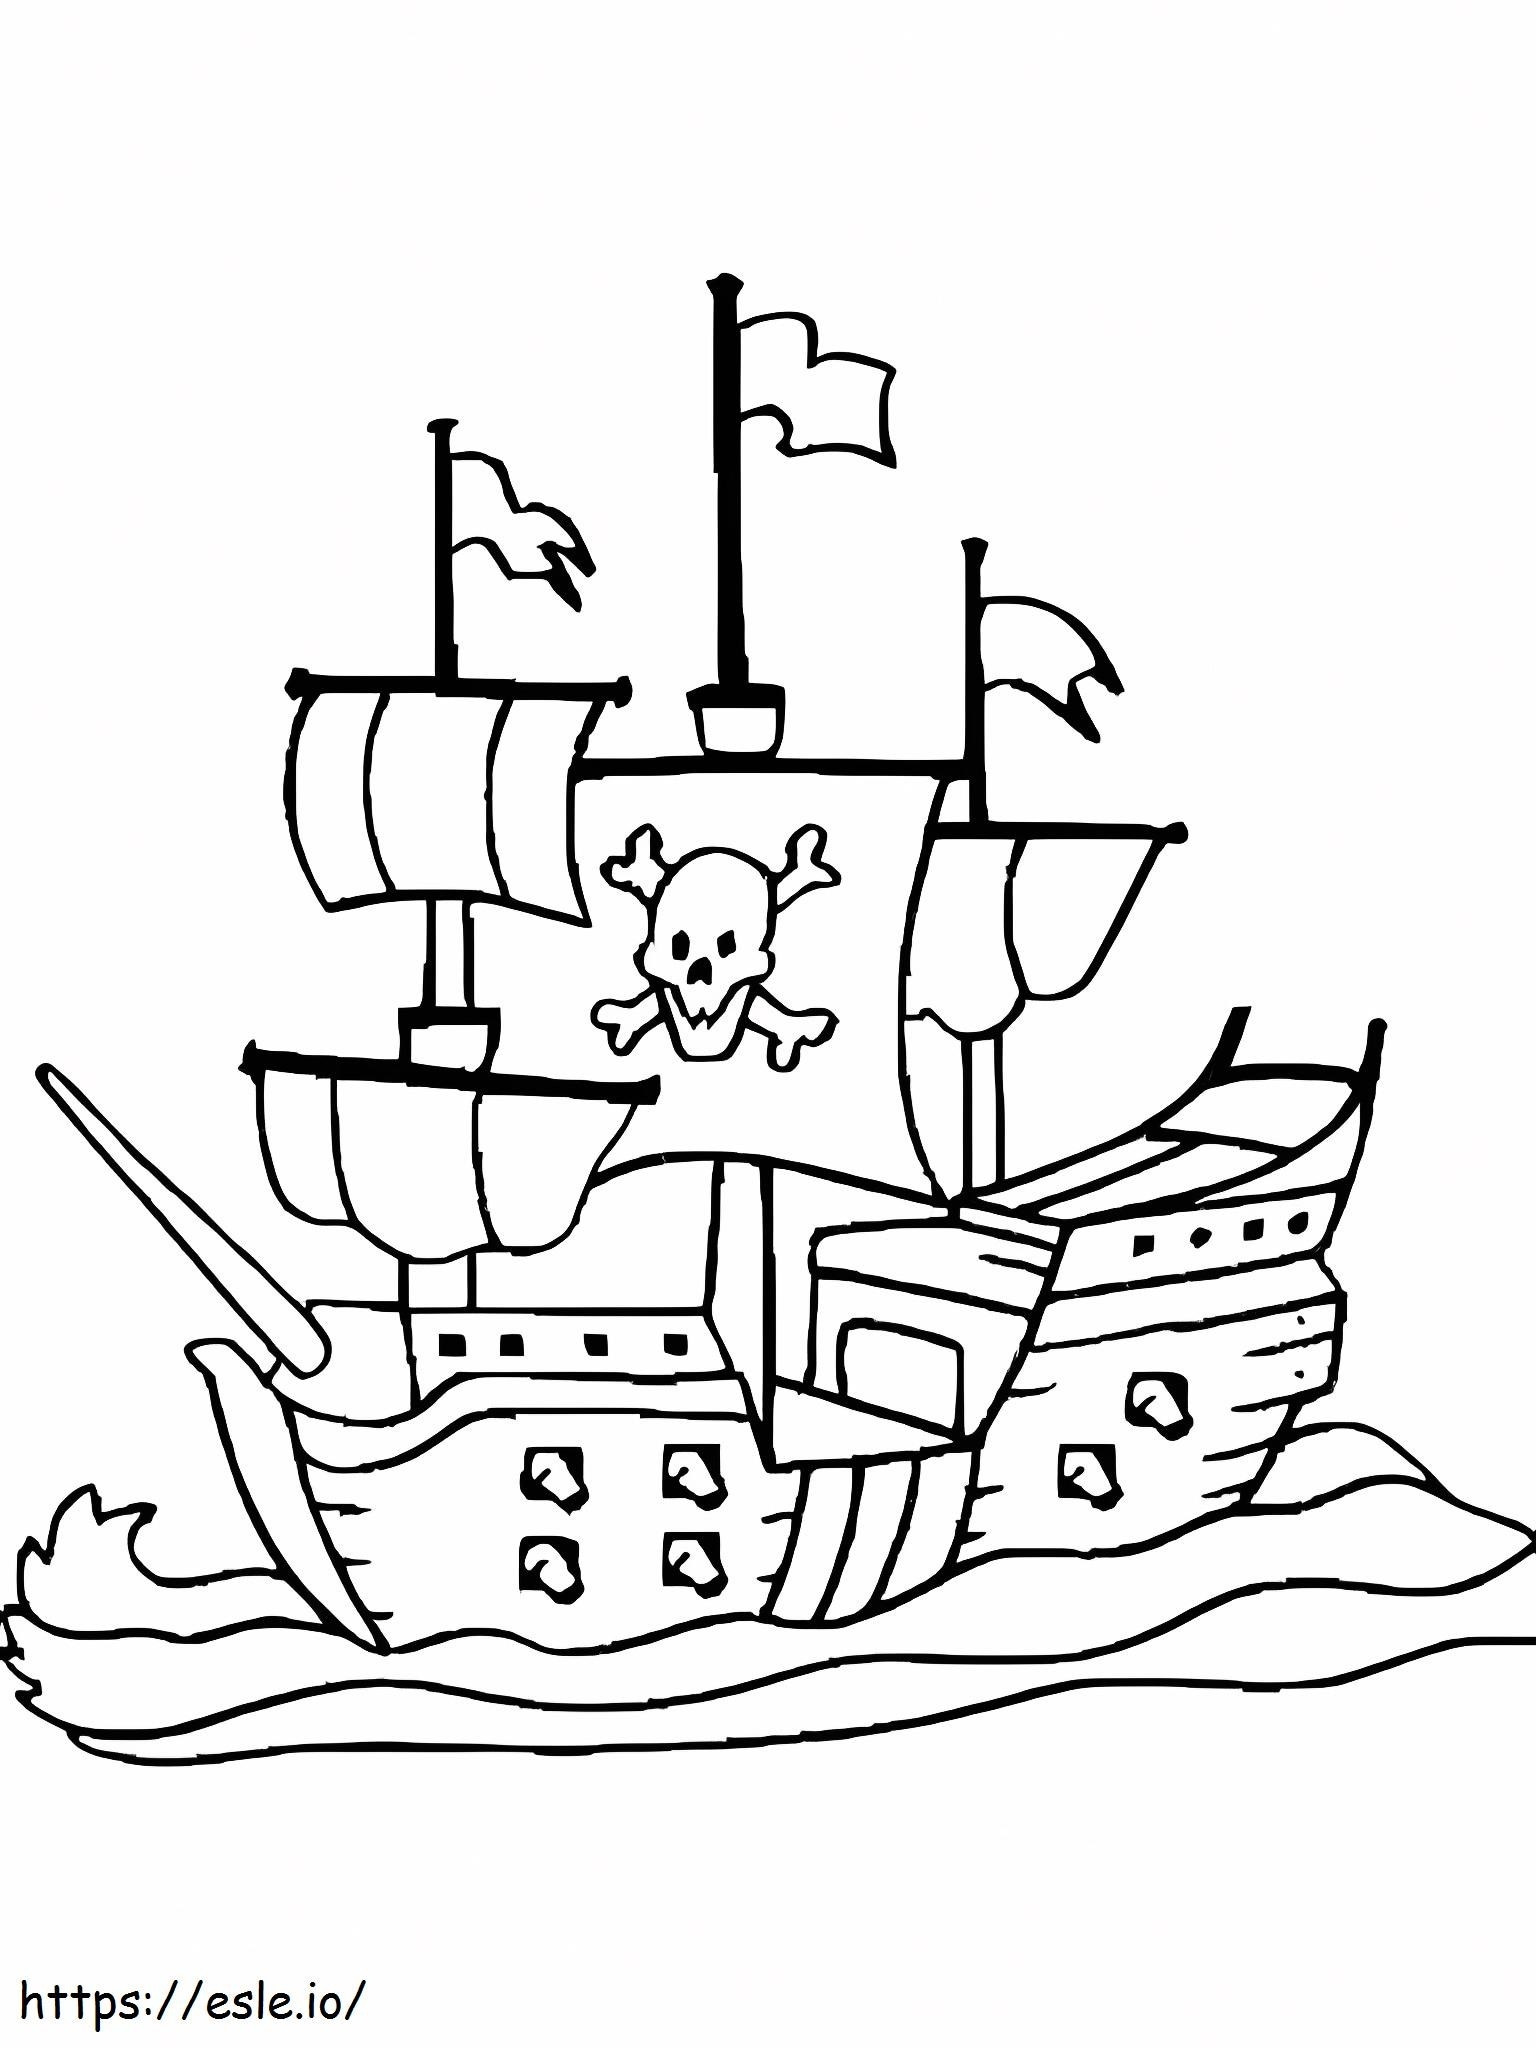 Barco pirata genial para colorear